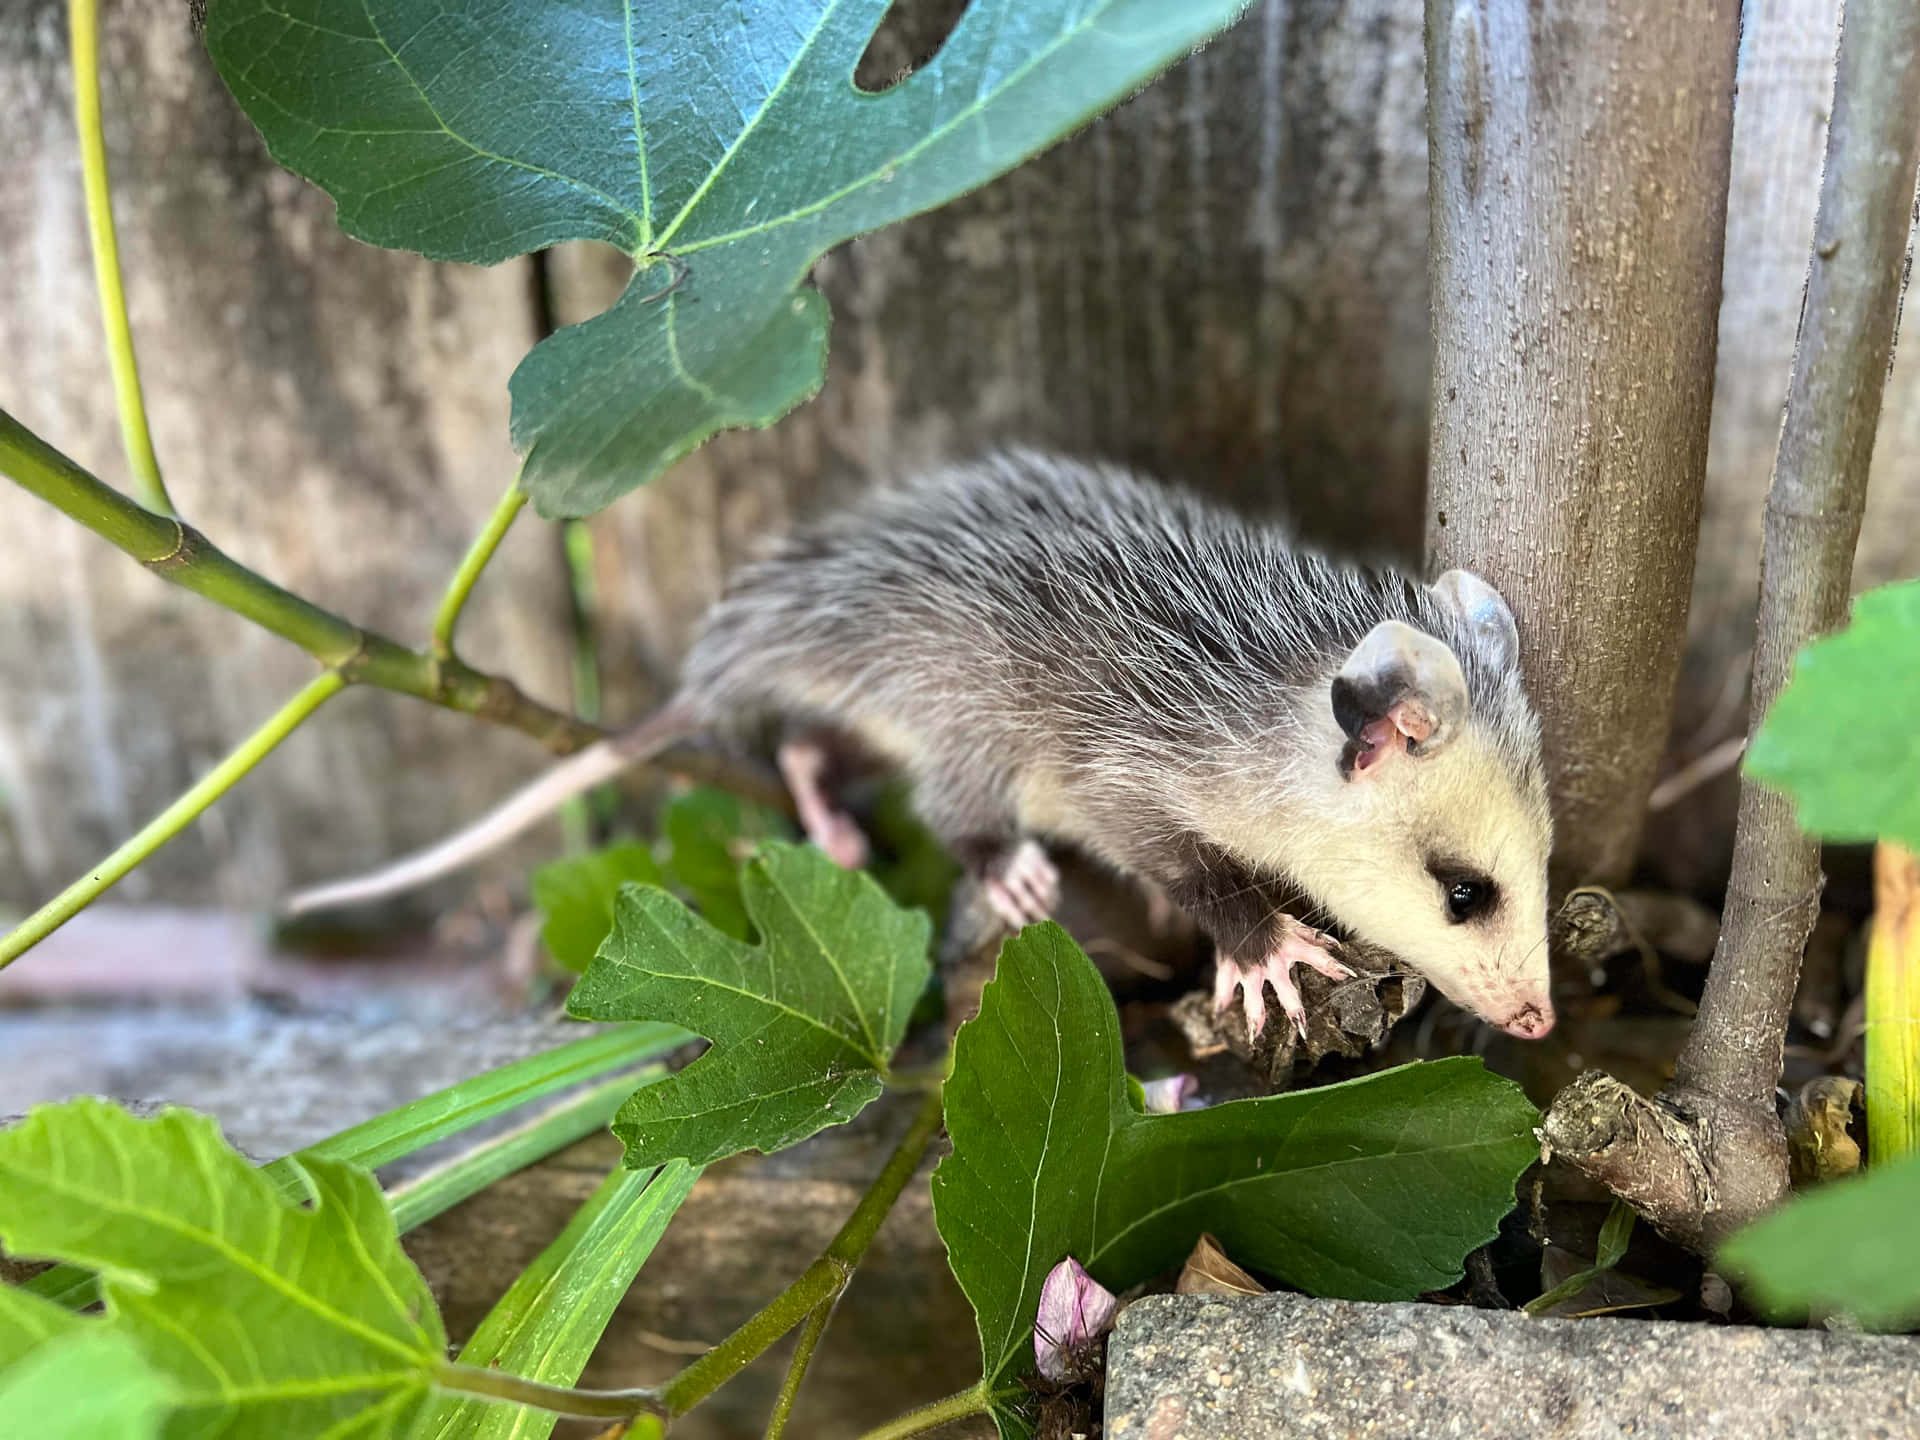 Baby Possum Exploring Garden.jpg Wallpaper